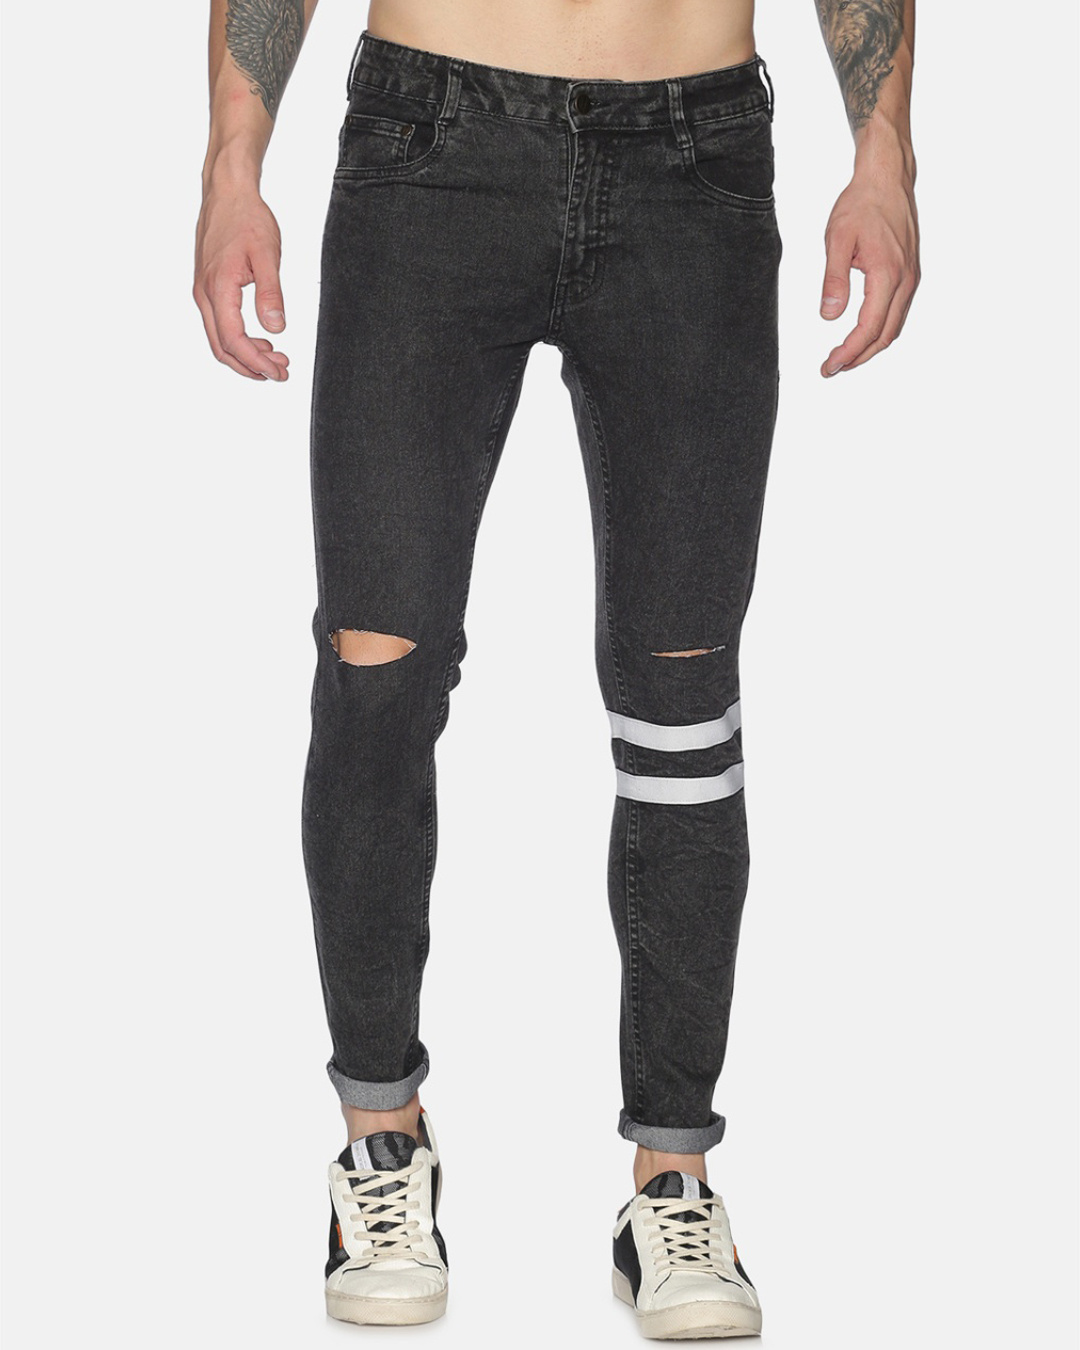 Buy Impackt Men's Black Washed Tapered Fit Jeans for Men Black Online ...